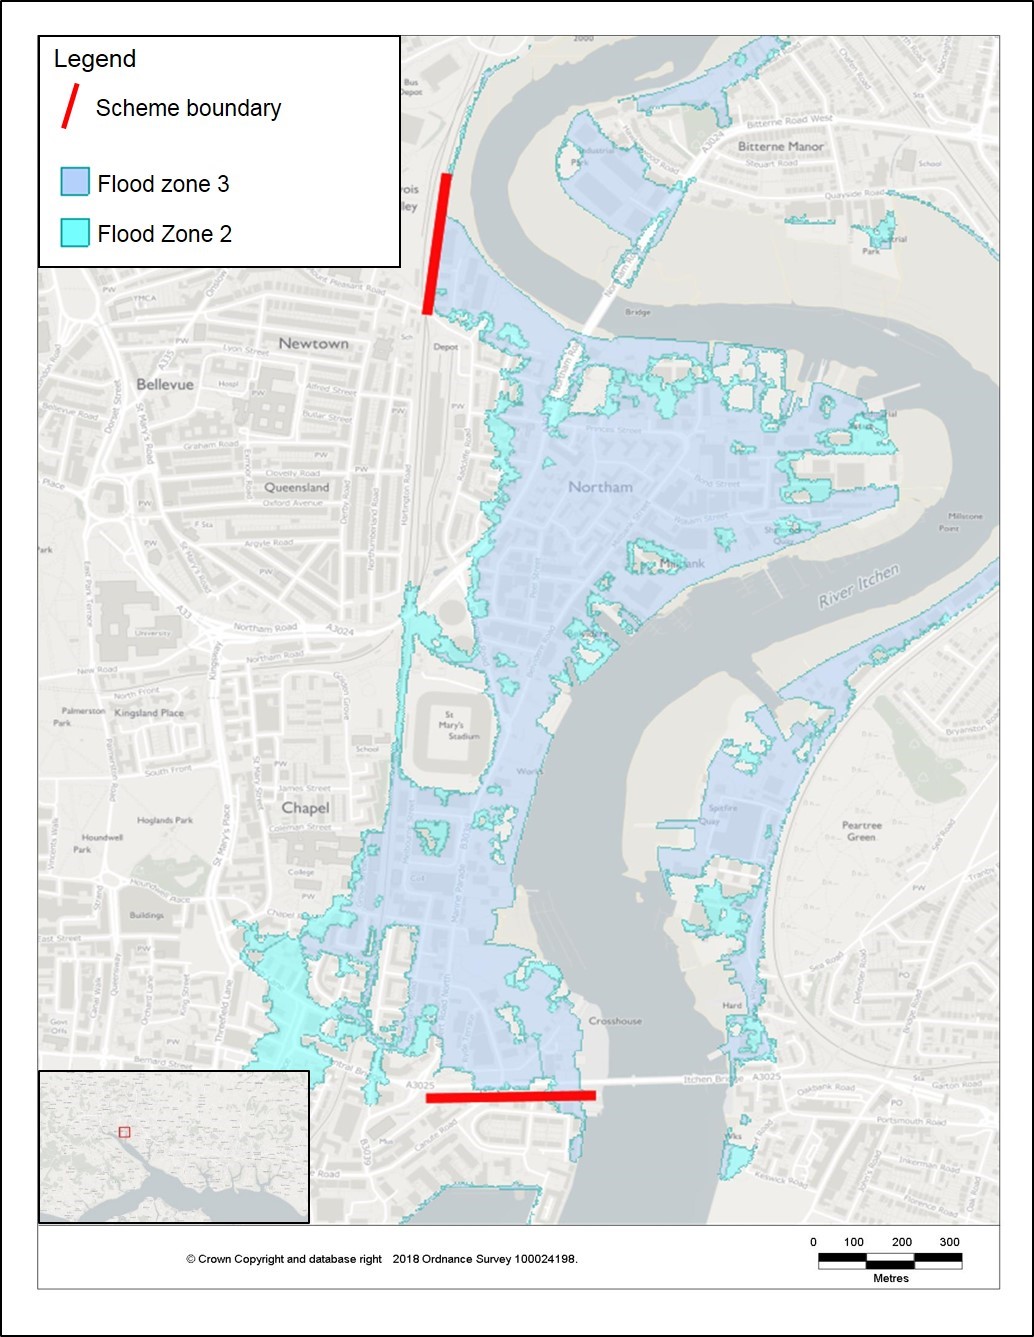 River Itchen Flood Alleviation Scheme - FAQs